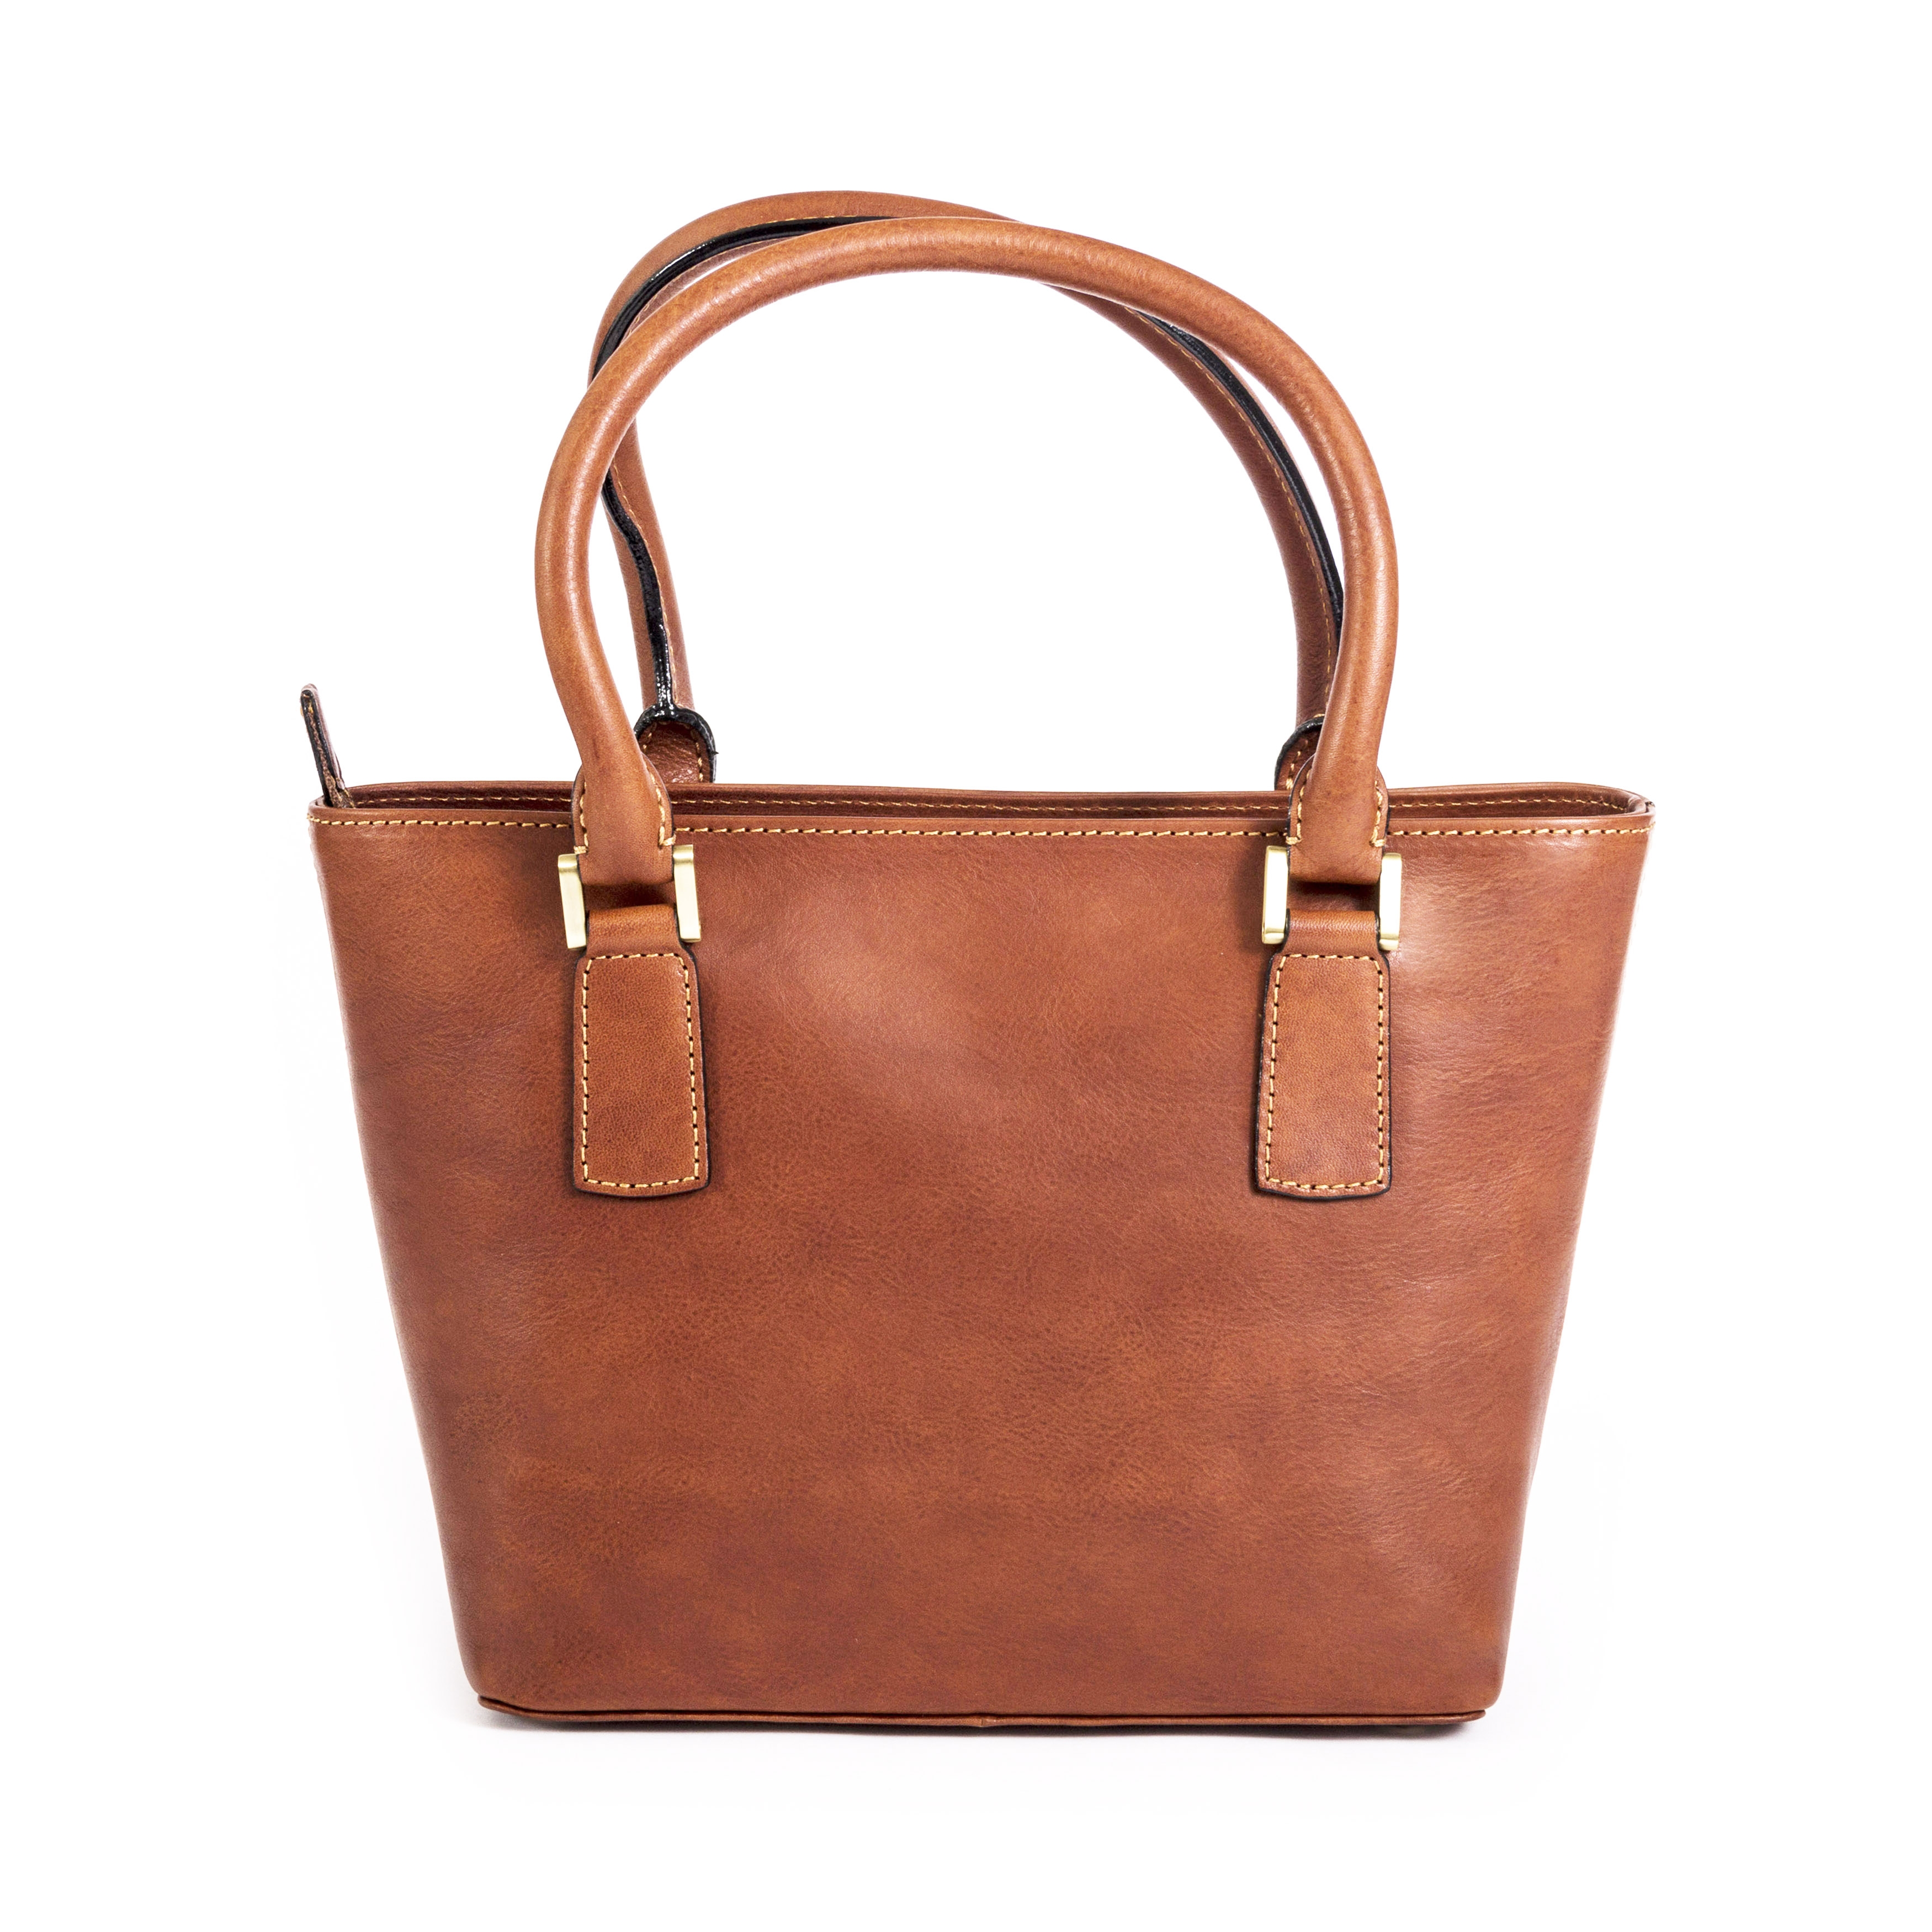 Gianni Conti Leather Grab Bag in tan 913658 tan